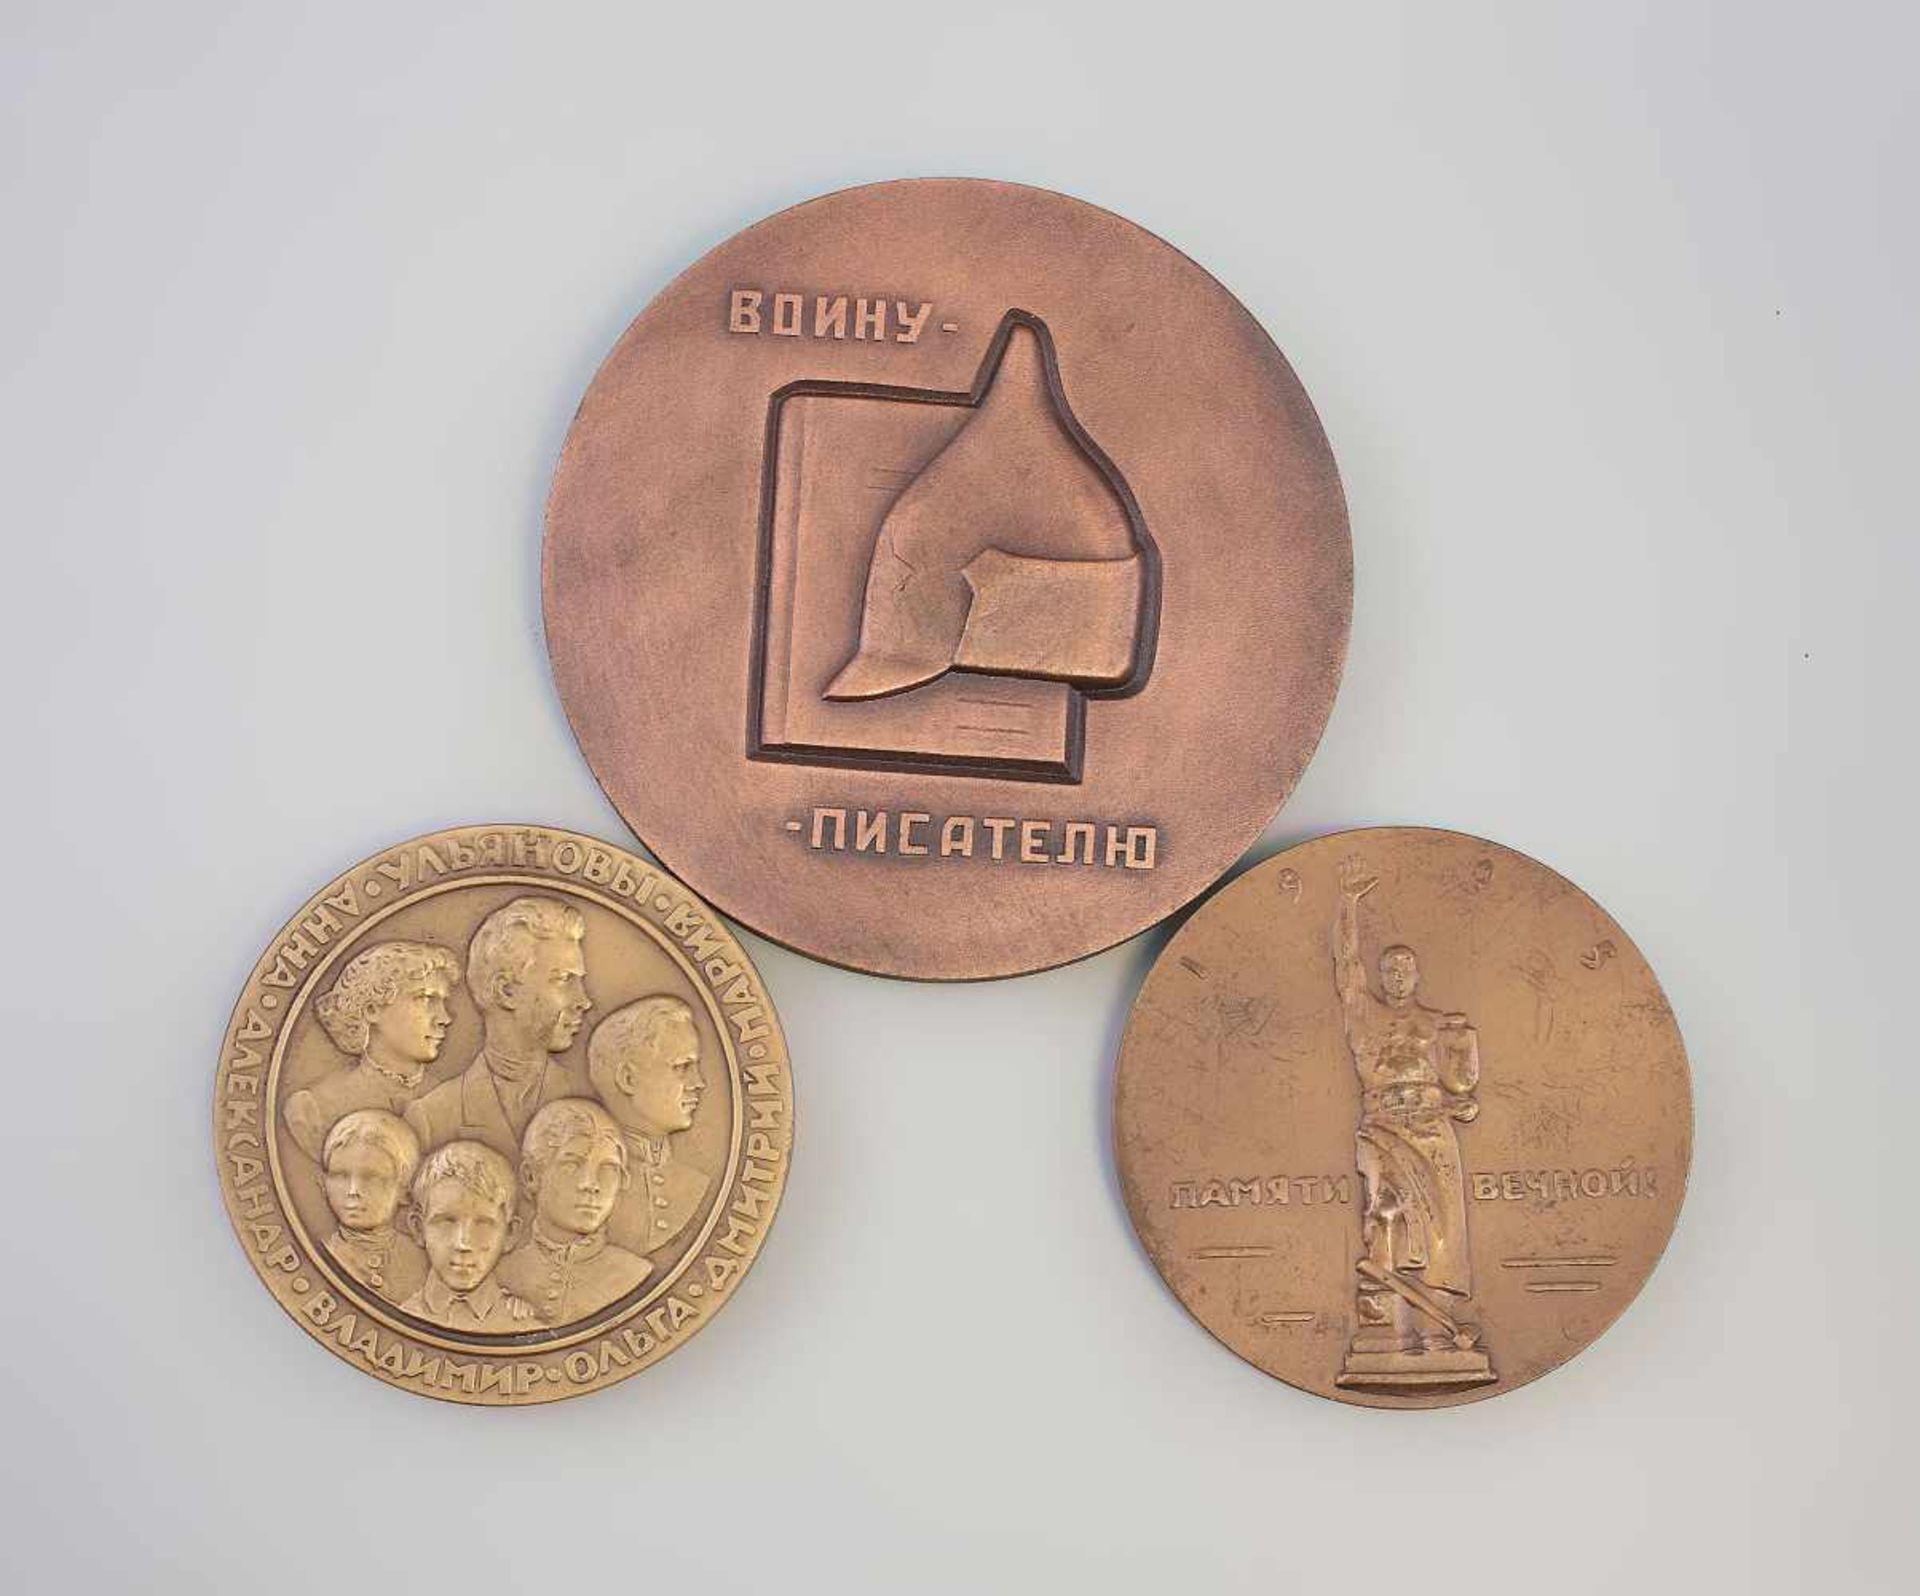 3 Russische Medaillen 2 x Bronze, dabei Petersburger Blutsonntag 1905, Dmitri Andrejewitsch Furmanow - Bild 2 aus 2